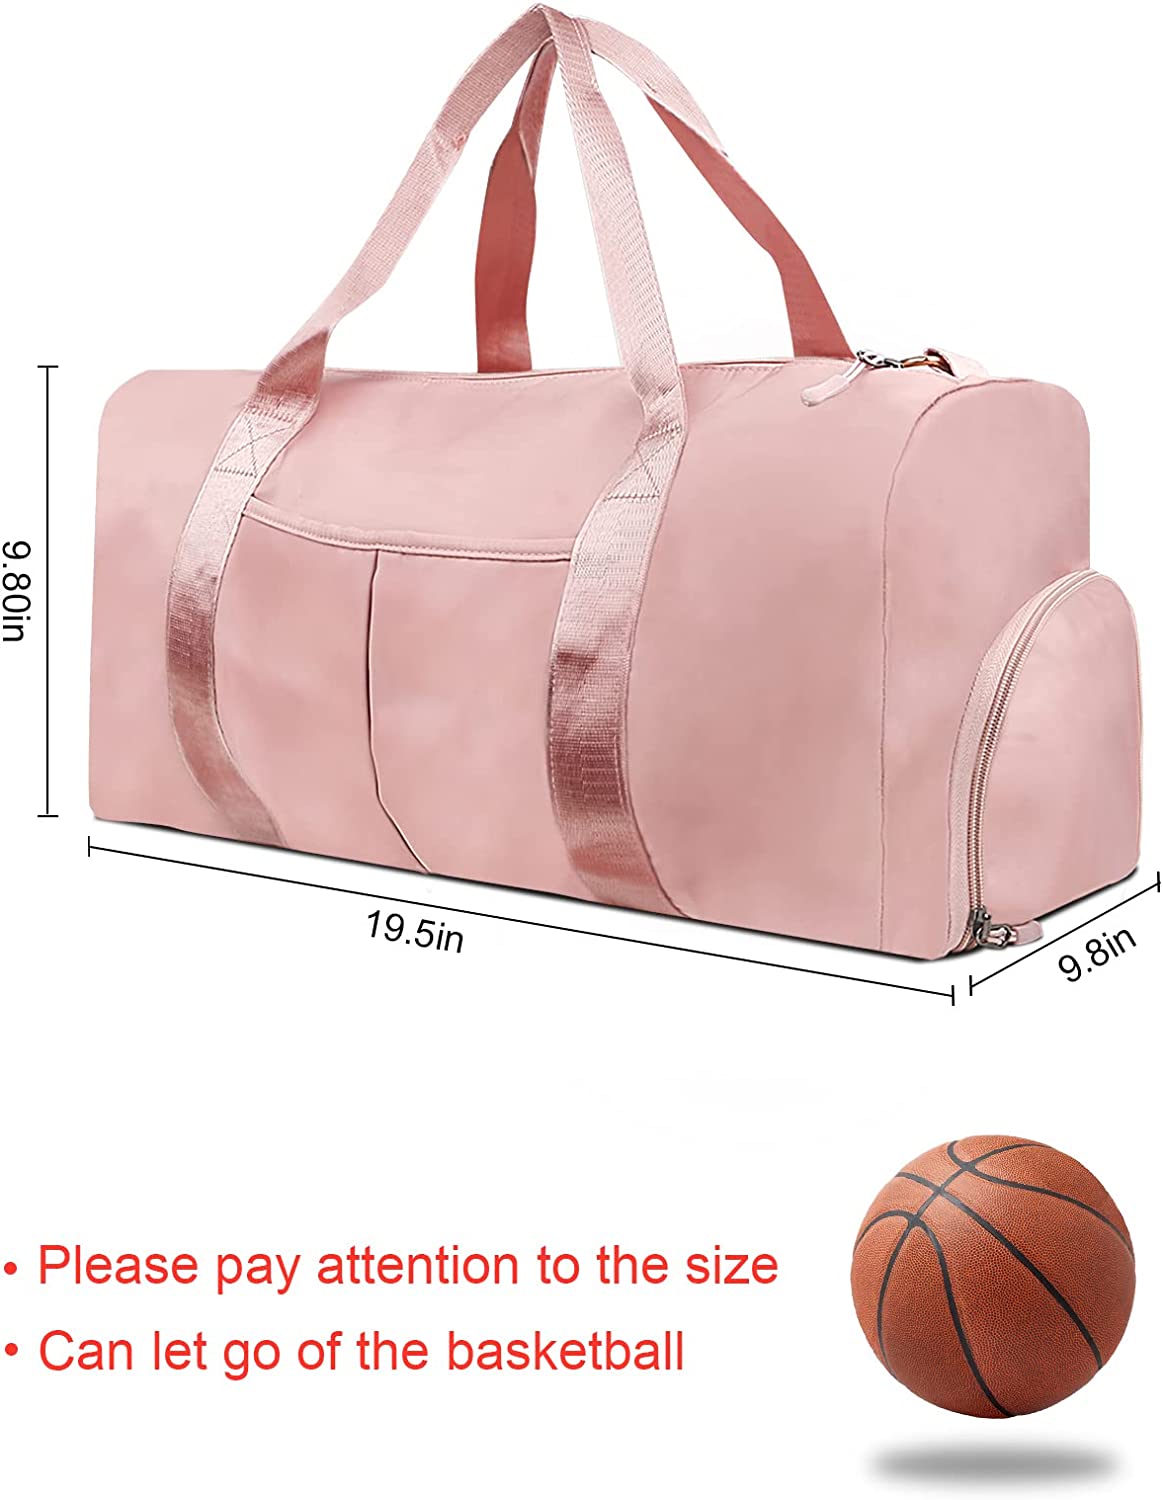 Geantă de călătorie pentru sport pentru sală de gimnastică, geantă de noapte impermeabilă pentru weekend, geantă de muncă roz cu buzunar umed și compartiment pentru pantofi